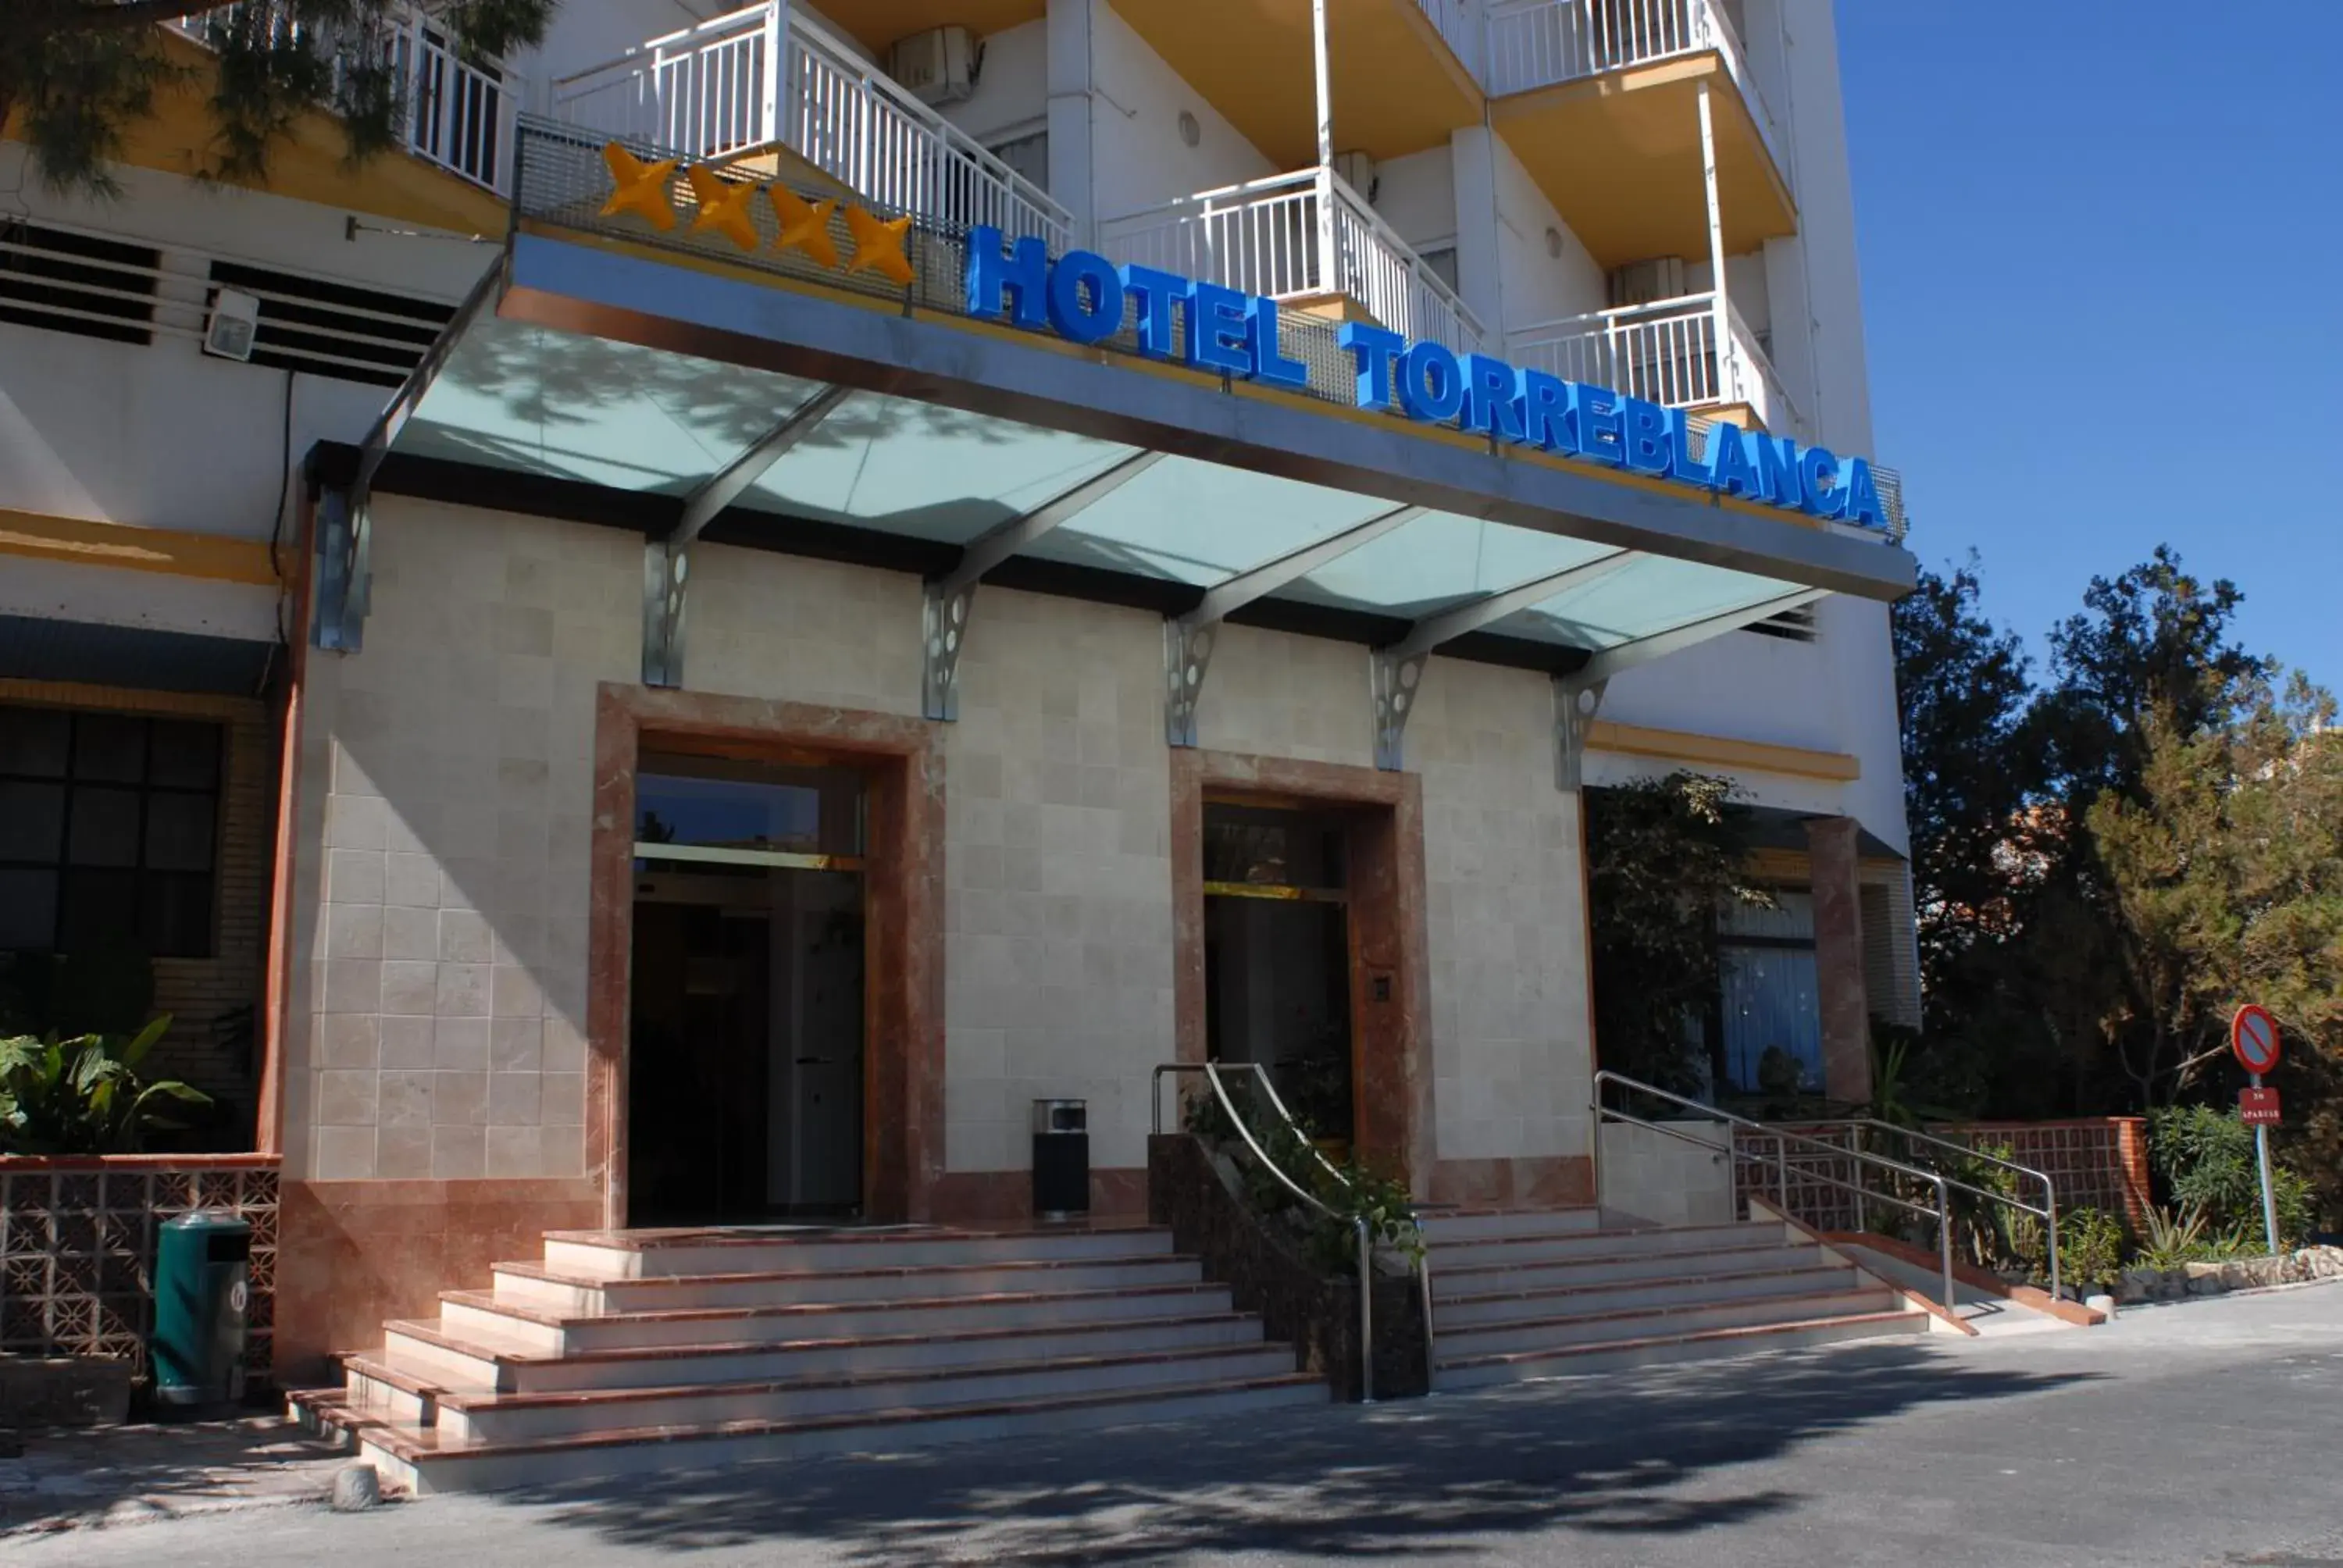 Facade/entrance, Property Building in Hotel Monarque Torreblanca